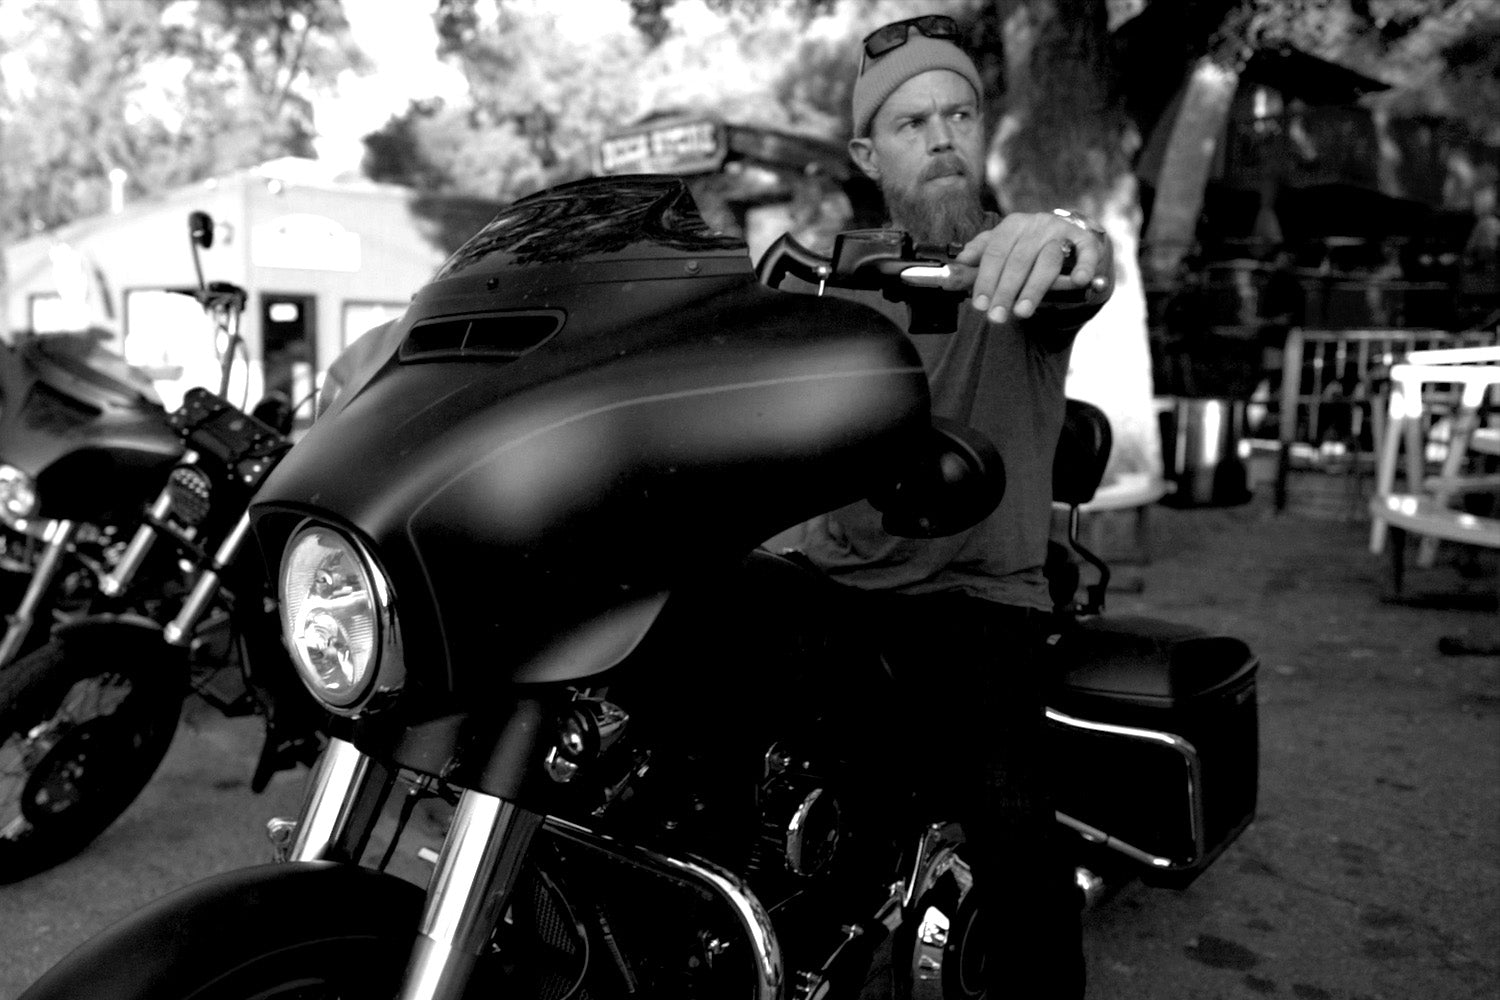 Ryan Hurst on a motorcycle